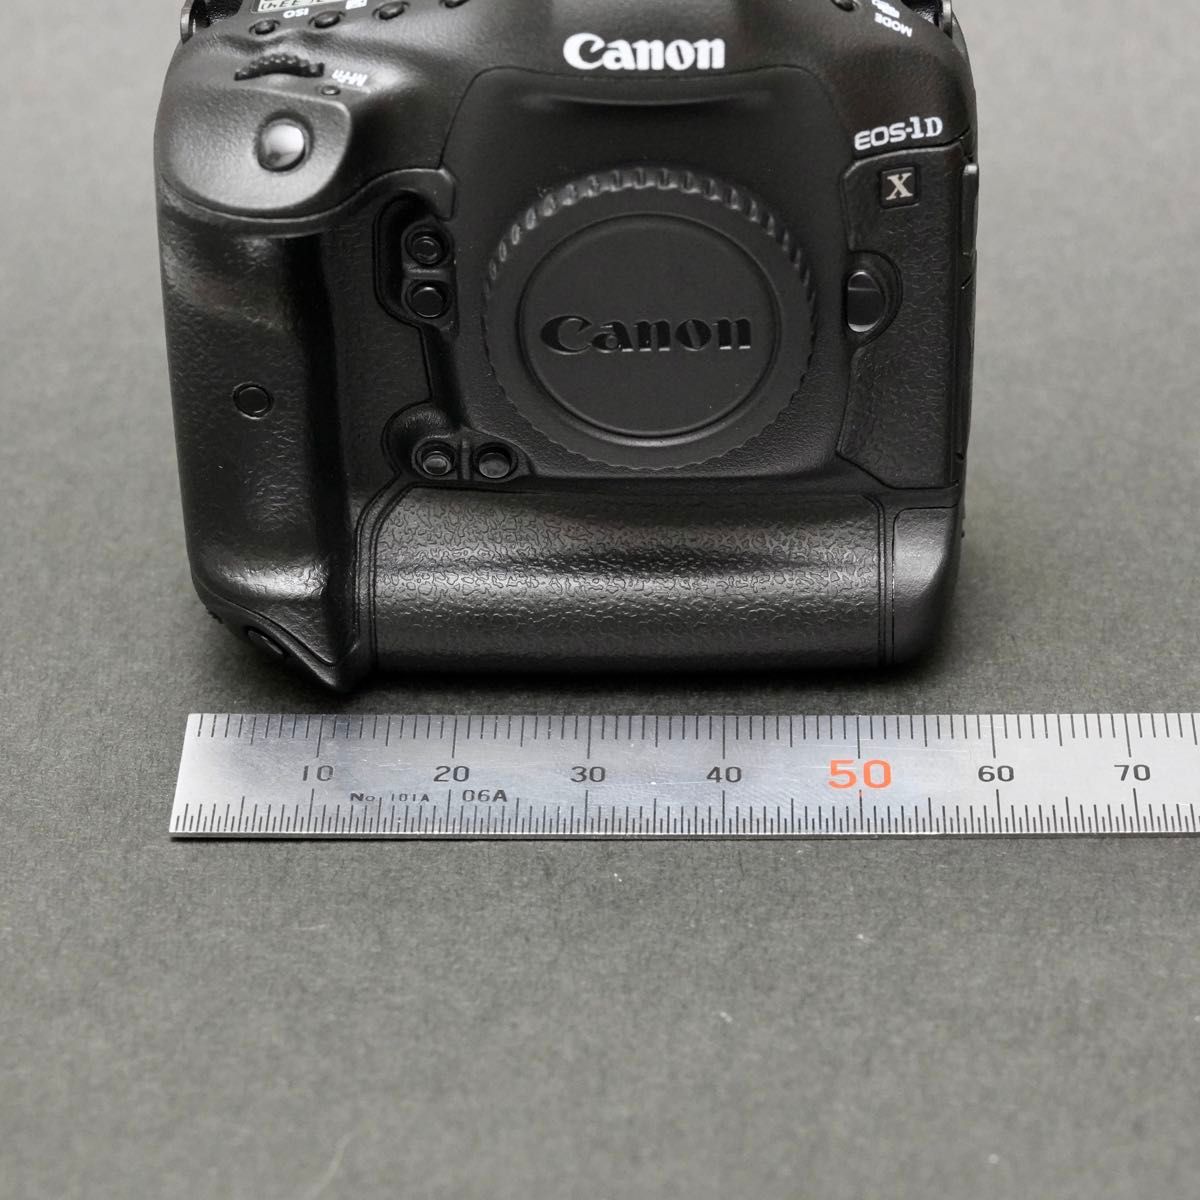 【激レア】Canon EOS-1DX ミニチュアカメラ USBメモリ キヤノン 新品未使用